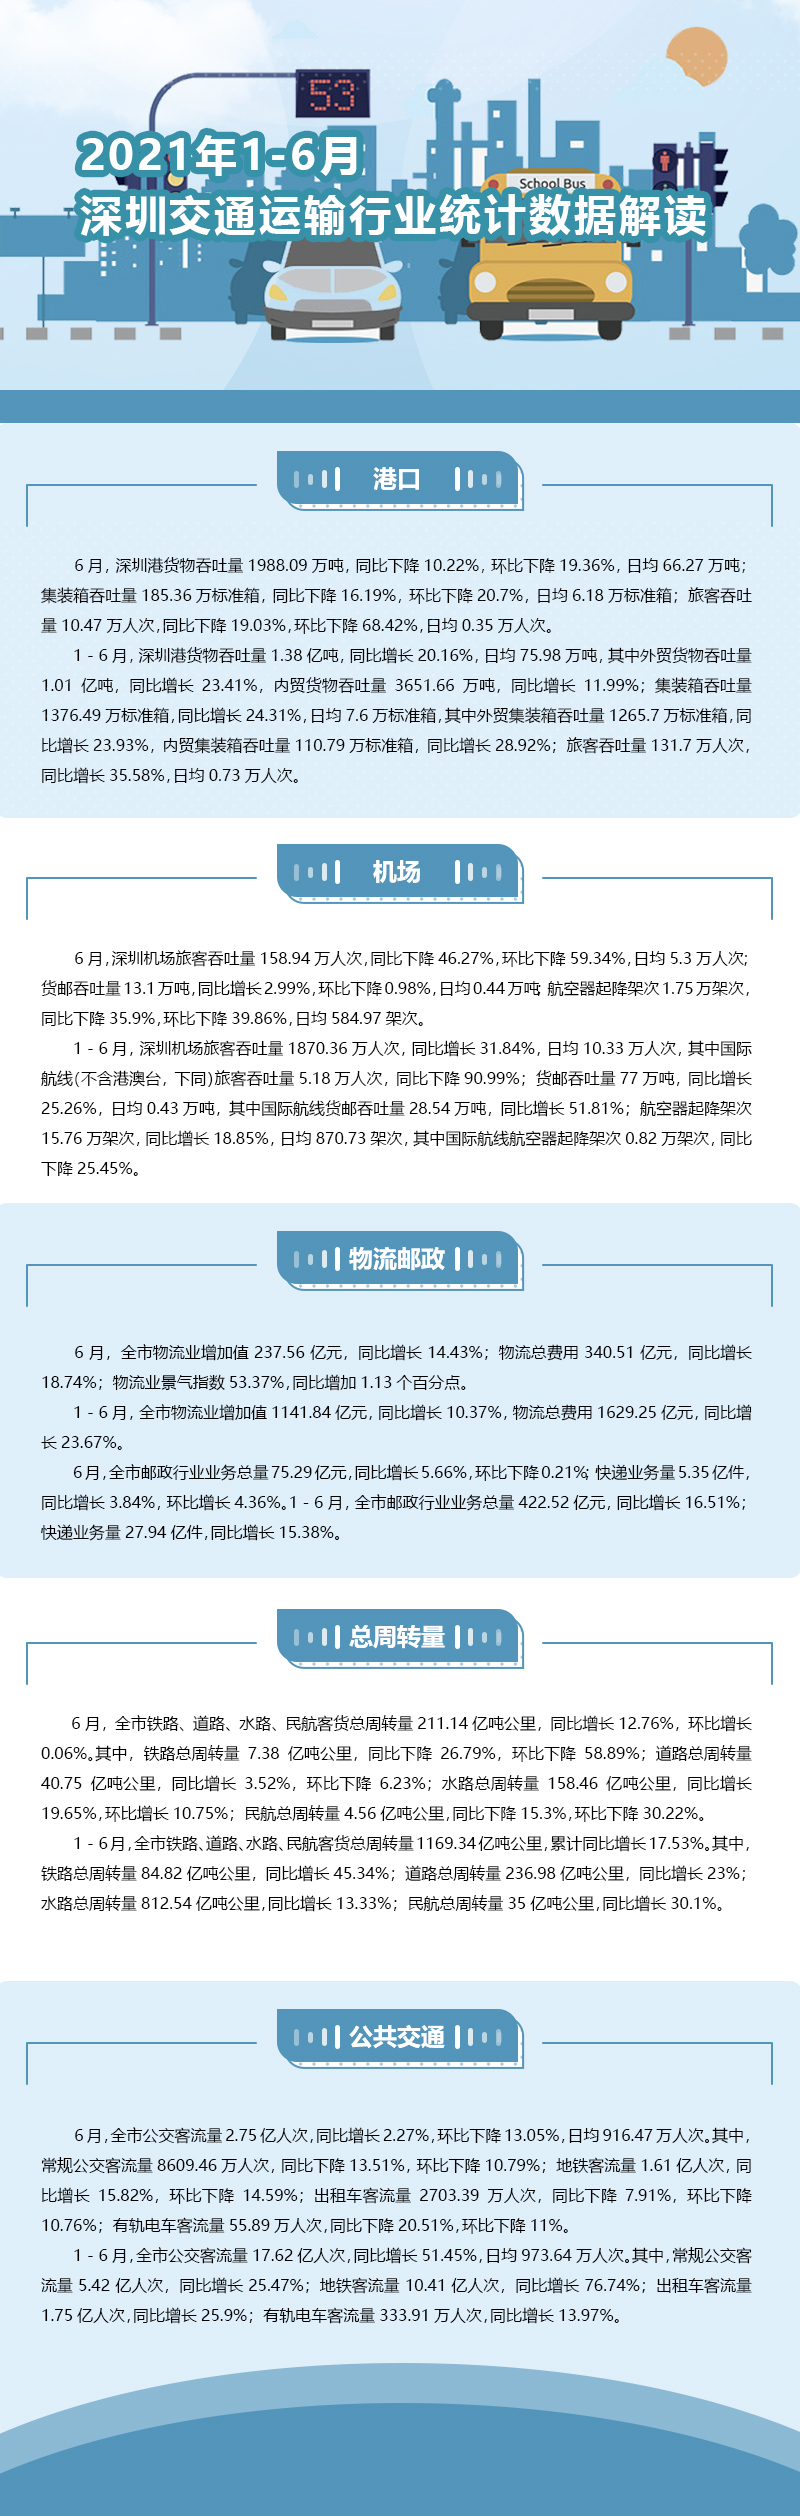 1-6月深圳交通运输行业统计数据解读.jpg